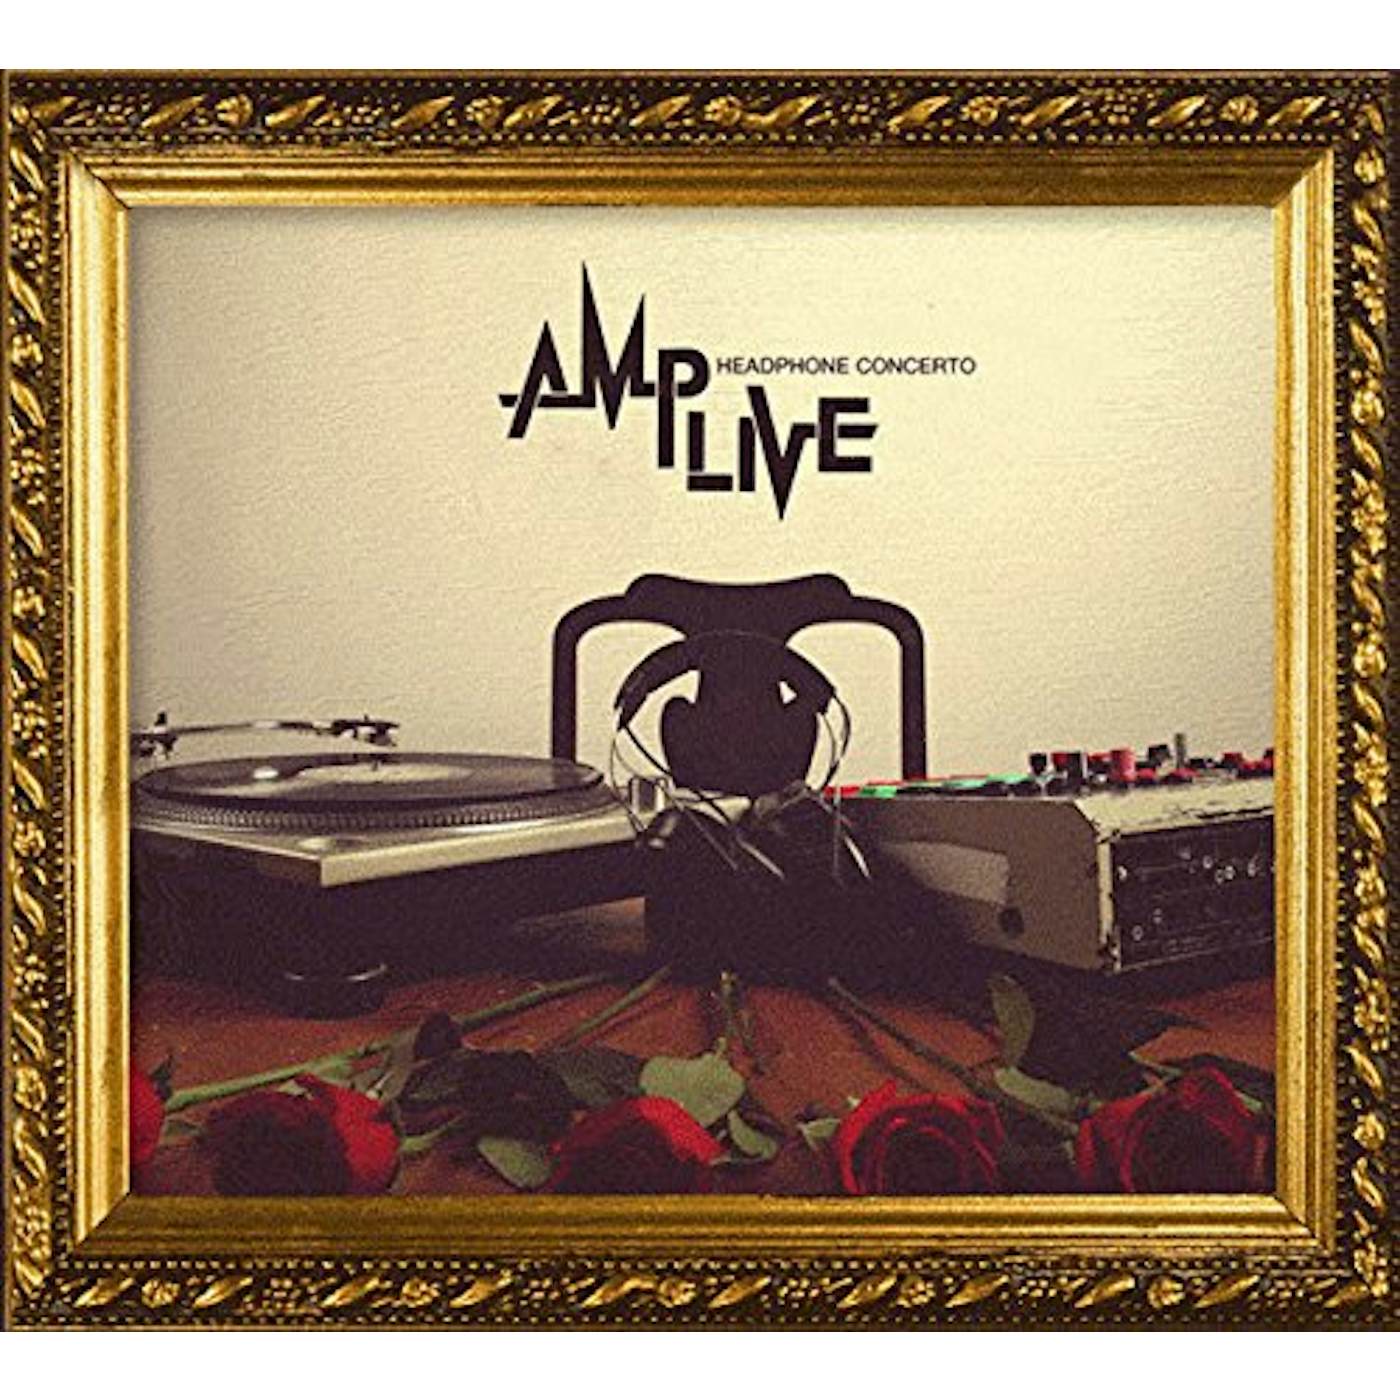 Amp Live Headphone Concerto Vinyl Record